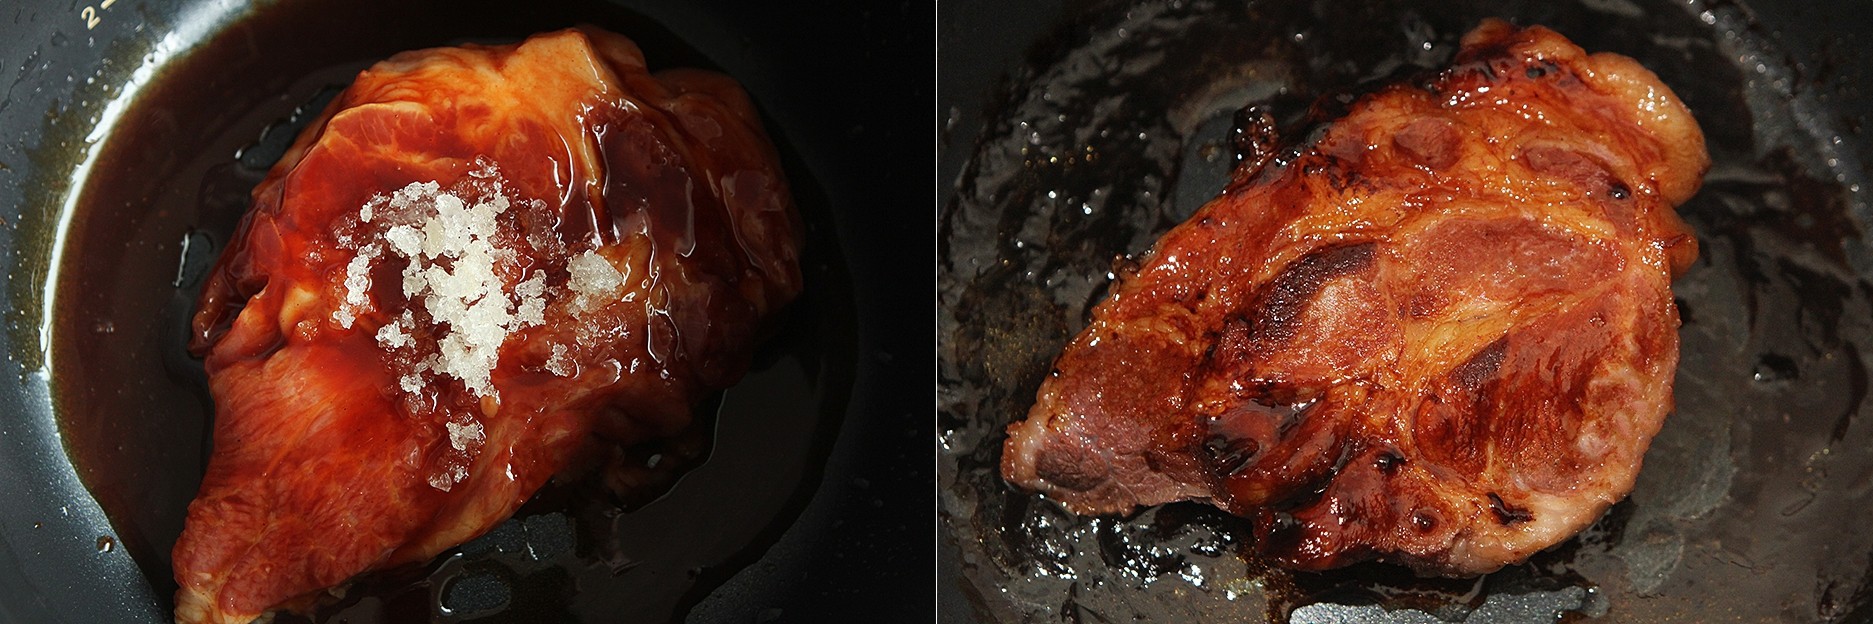 Tưởng không dễ mà dễ không tưởng: nướng thịt bằng nồi cơm điện ăn siêu ngon!-3